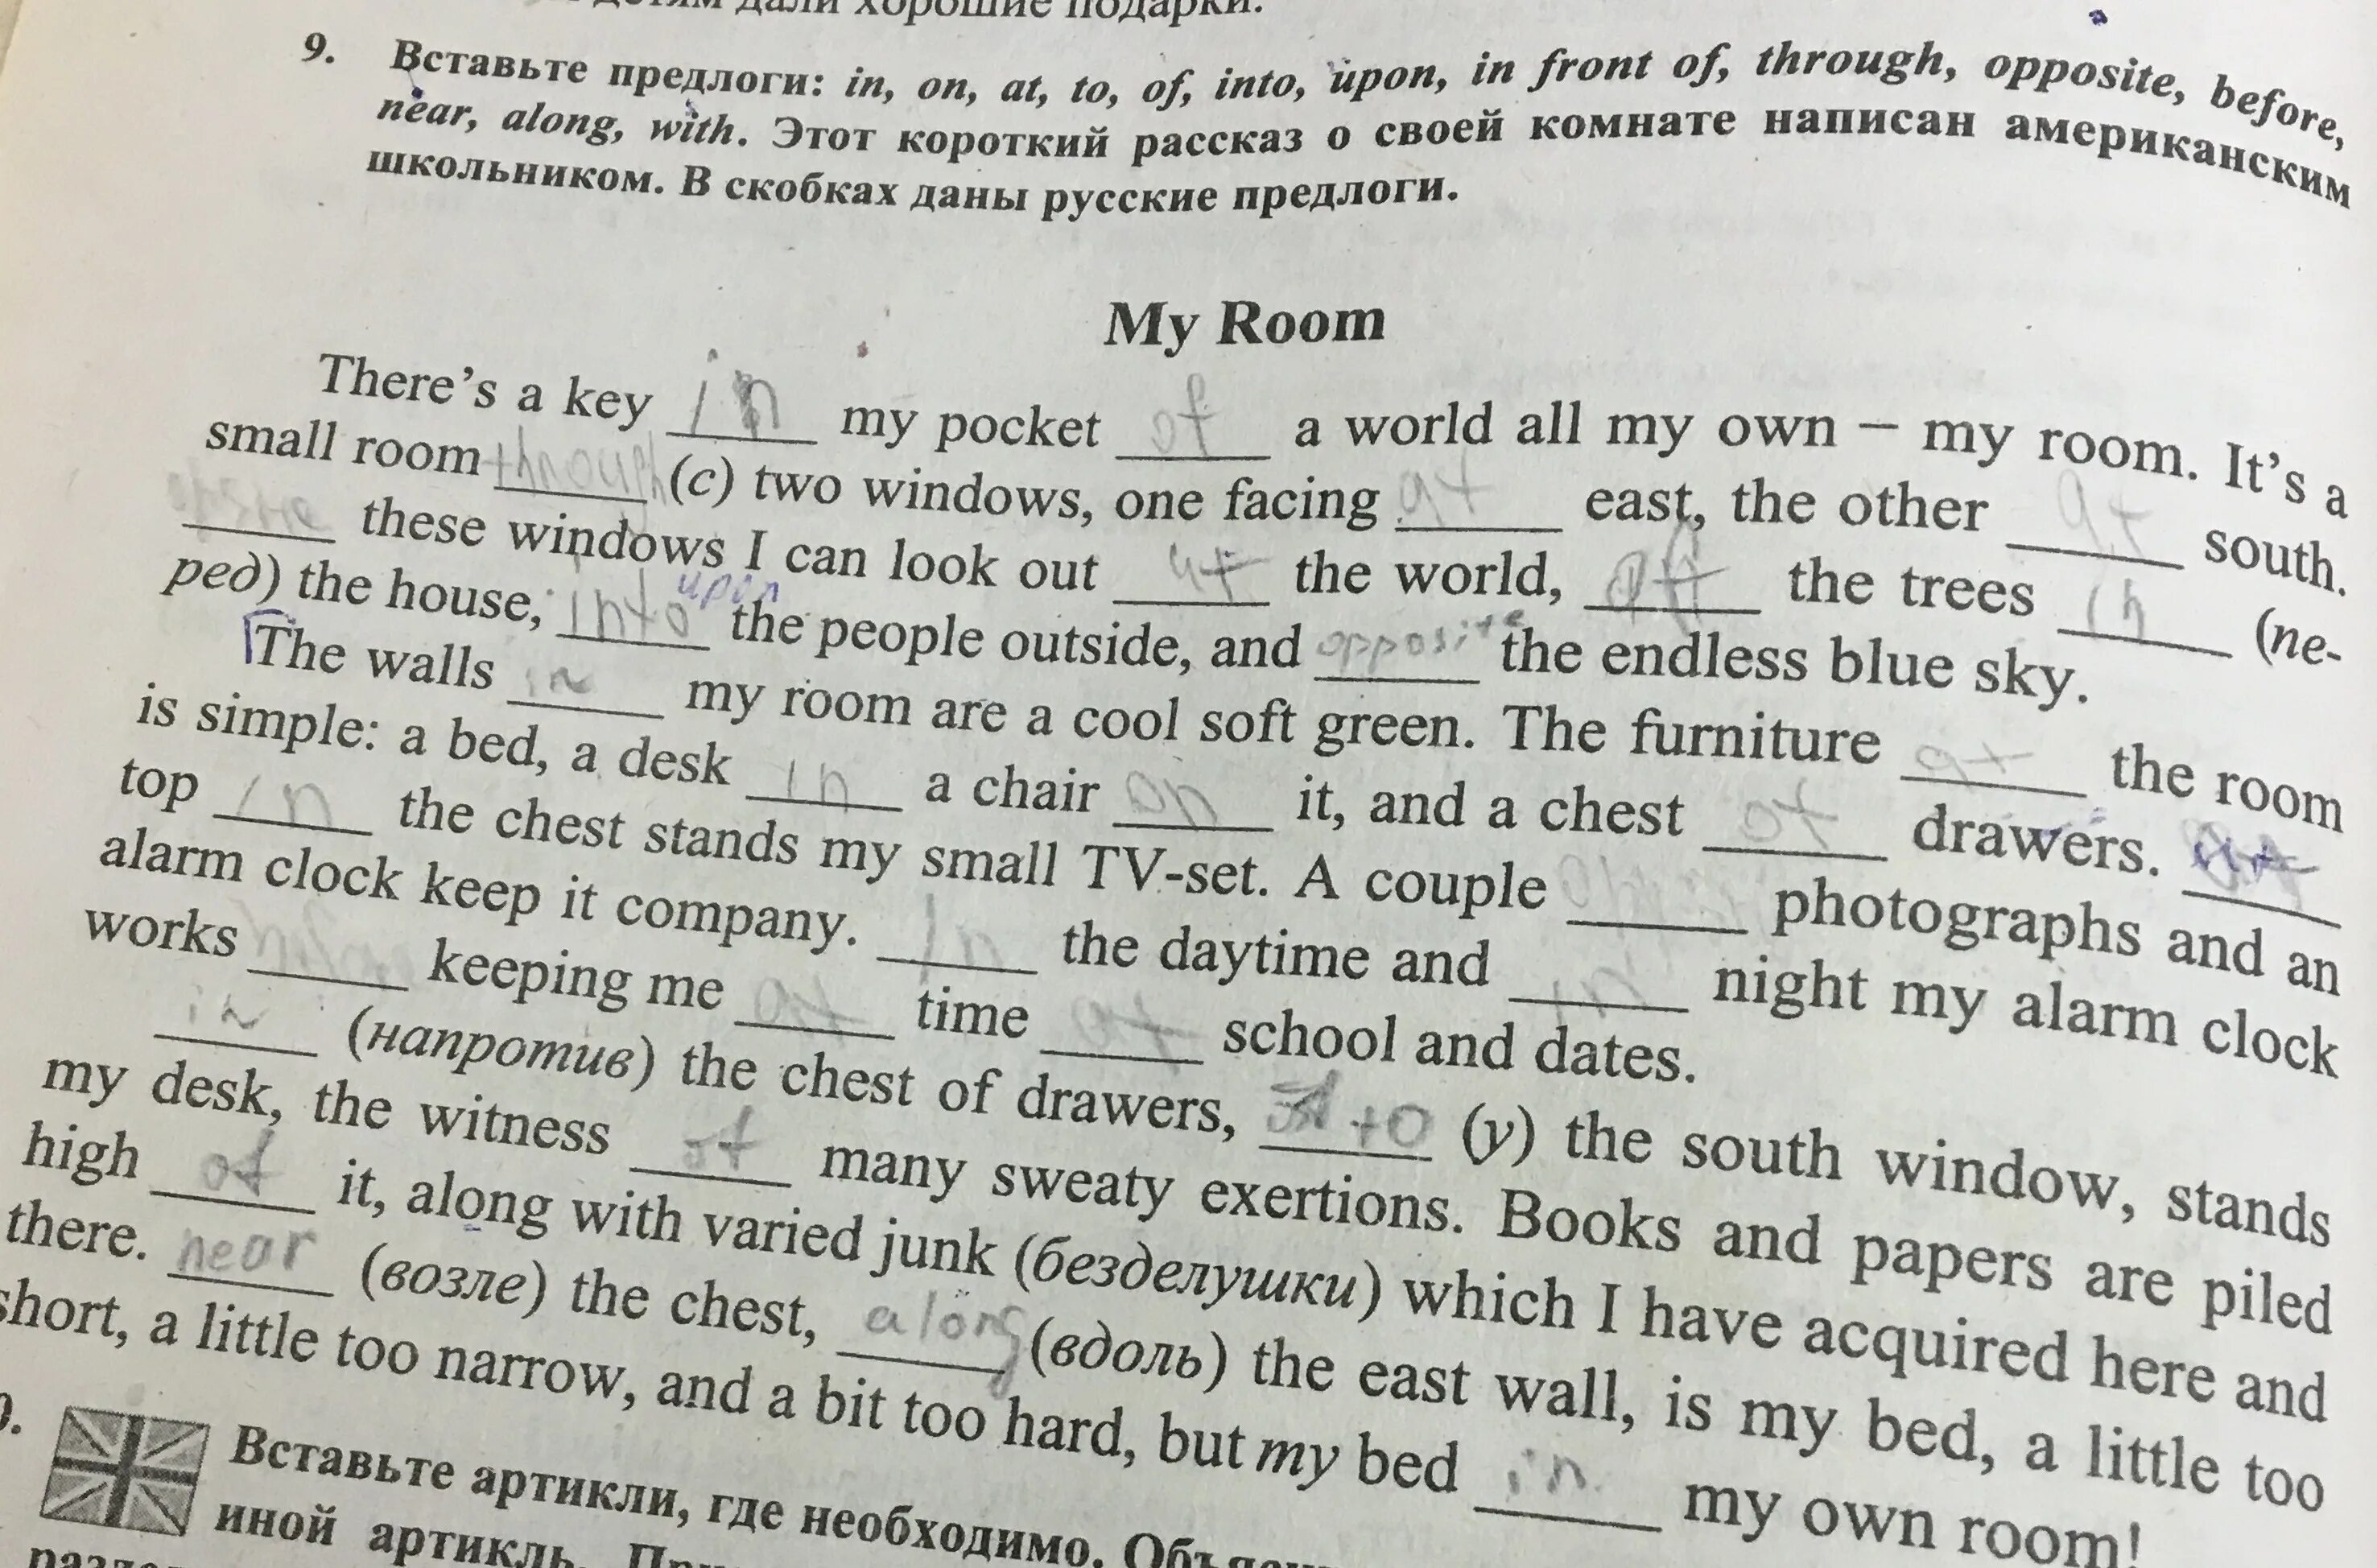 My favourite Room сочинение. Моя комната сочинение на английском 3 класс с переводом. Сочинение моя комната на английском. My Flat сочинение на английском 6 класс. Английский текст моя комната